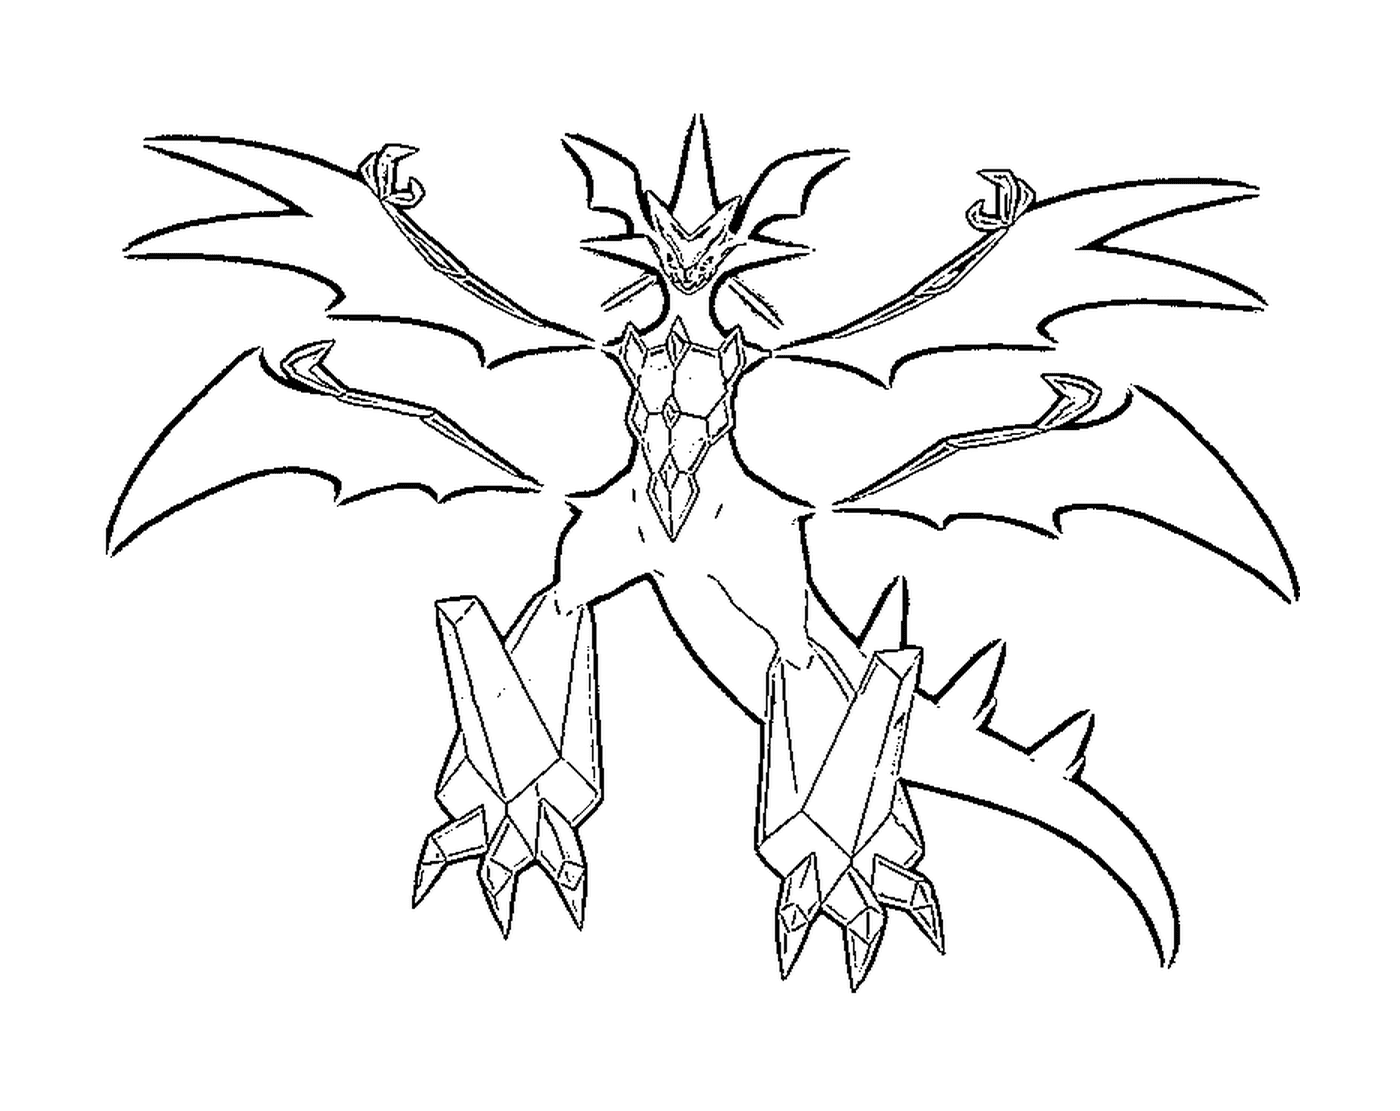  Necrozma, a dragon 